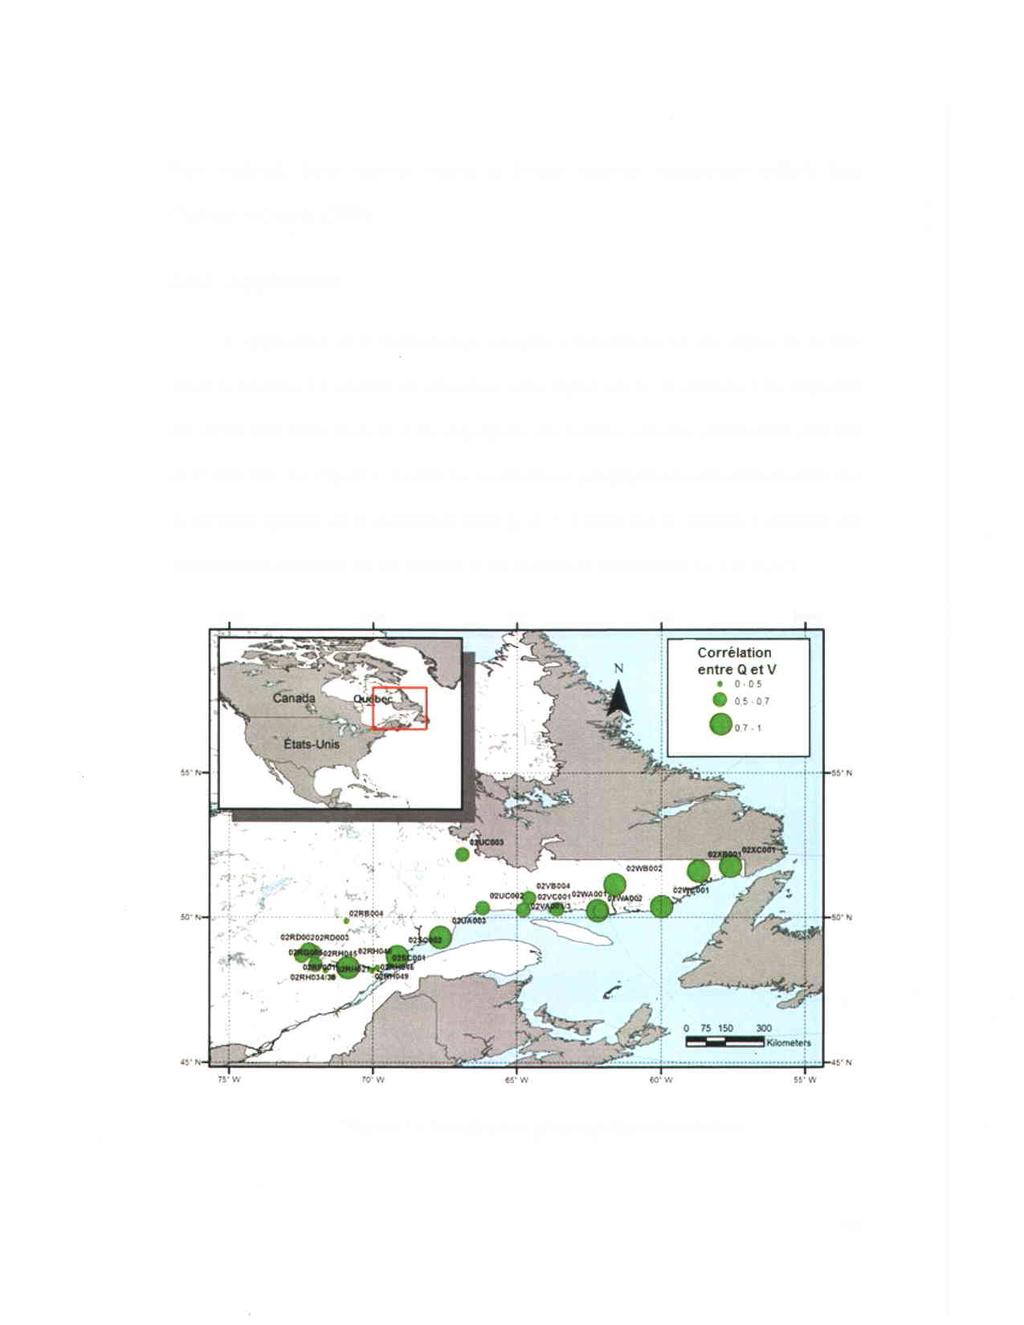 Biais régional, Biais régional absolu et Erreur régionale quadratique utilisés dans Chebana et Ouarda (2009). 3.4.